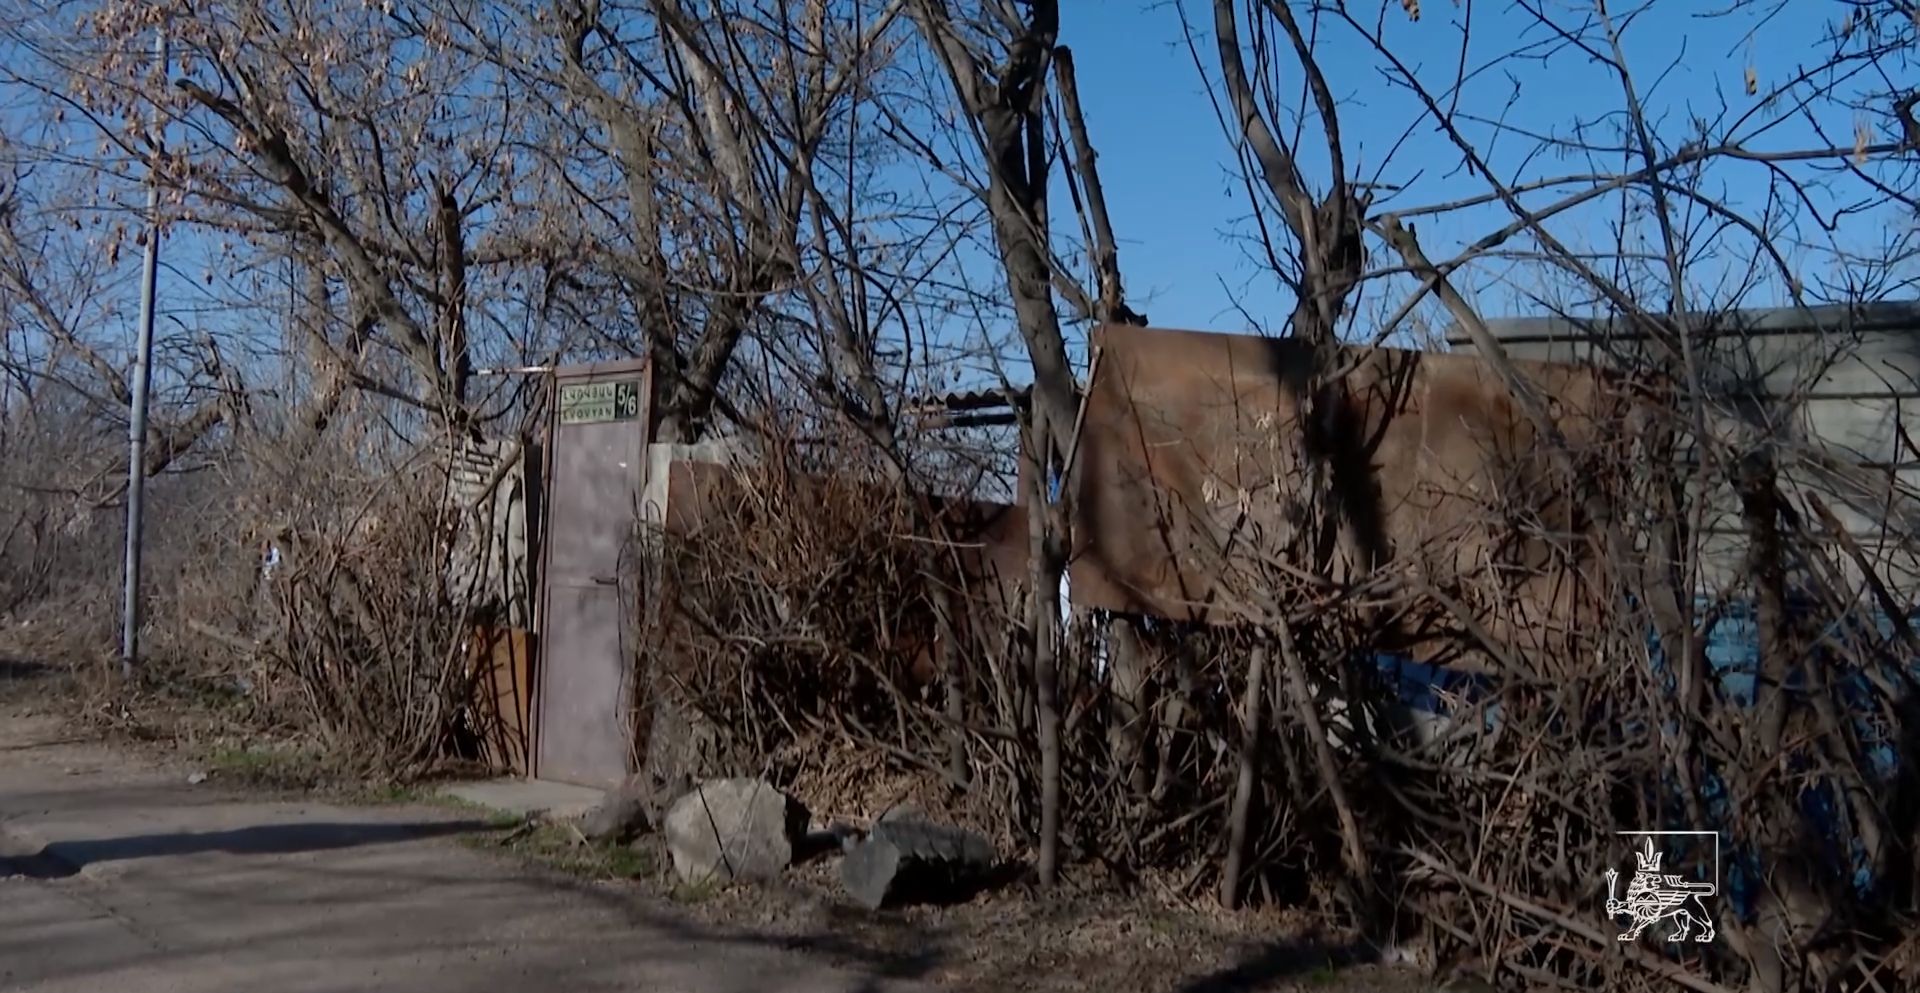 Նոր Նորքի Լվովյան փողոցի տասնամյակներ շարունակ զավթված տարածքները վերադարձվում են համայնքին (տեսանյութ)